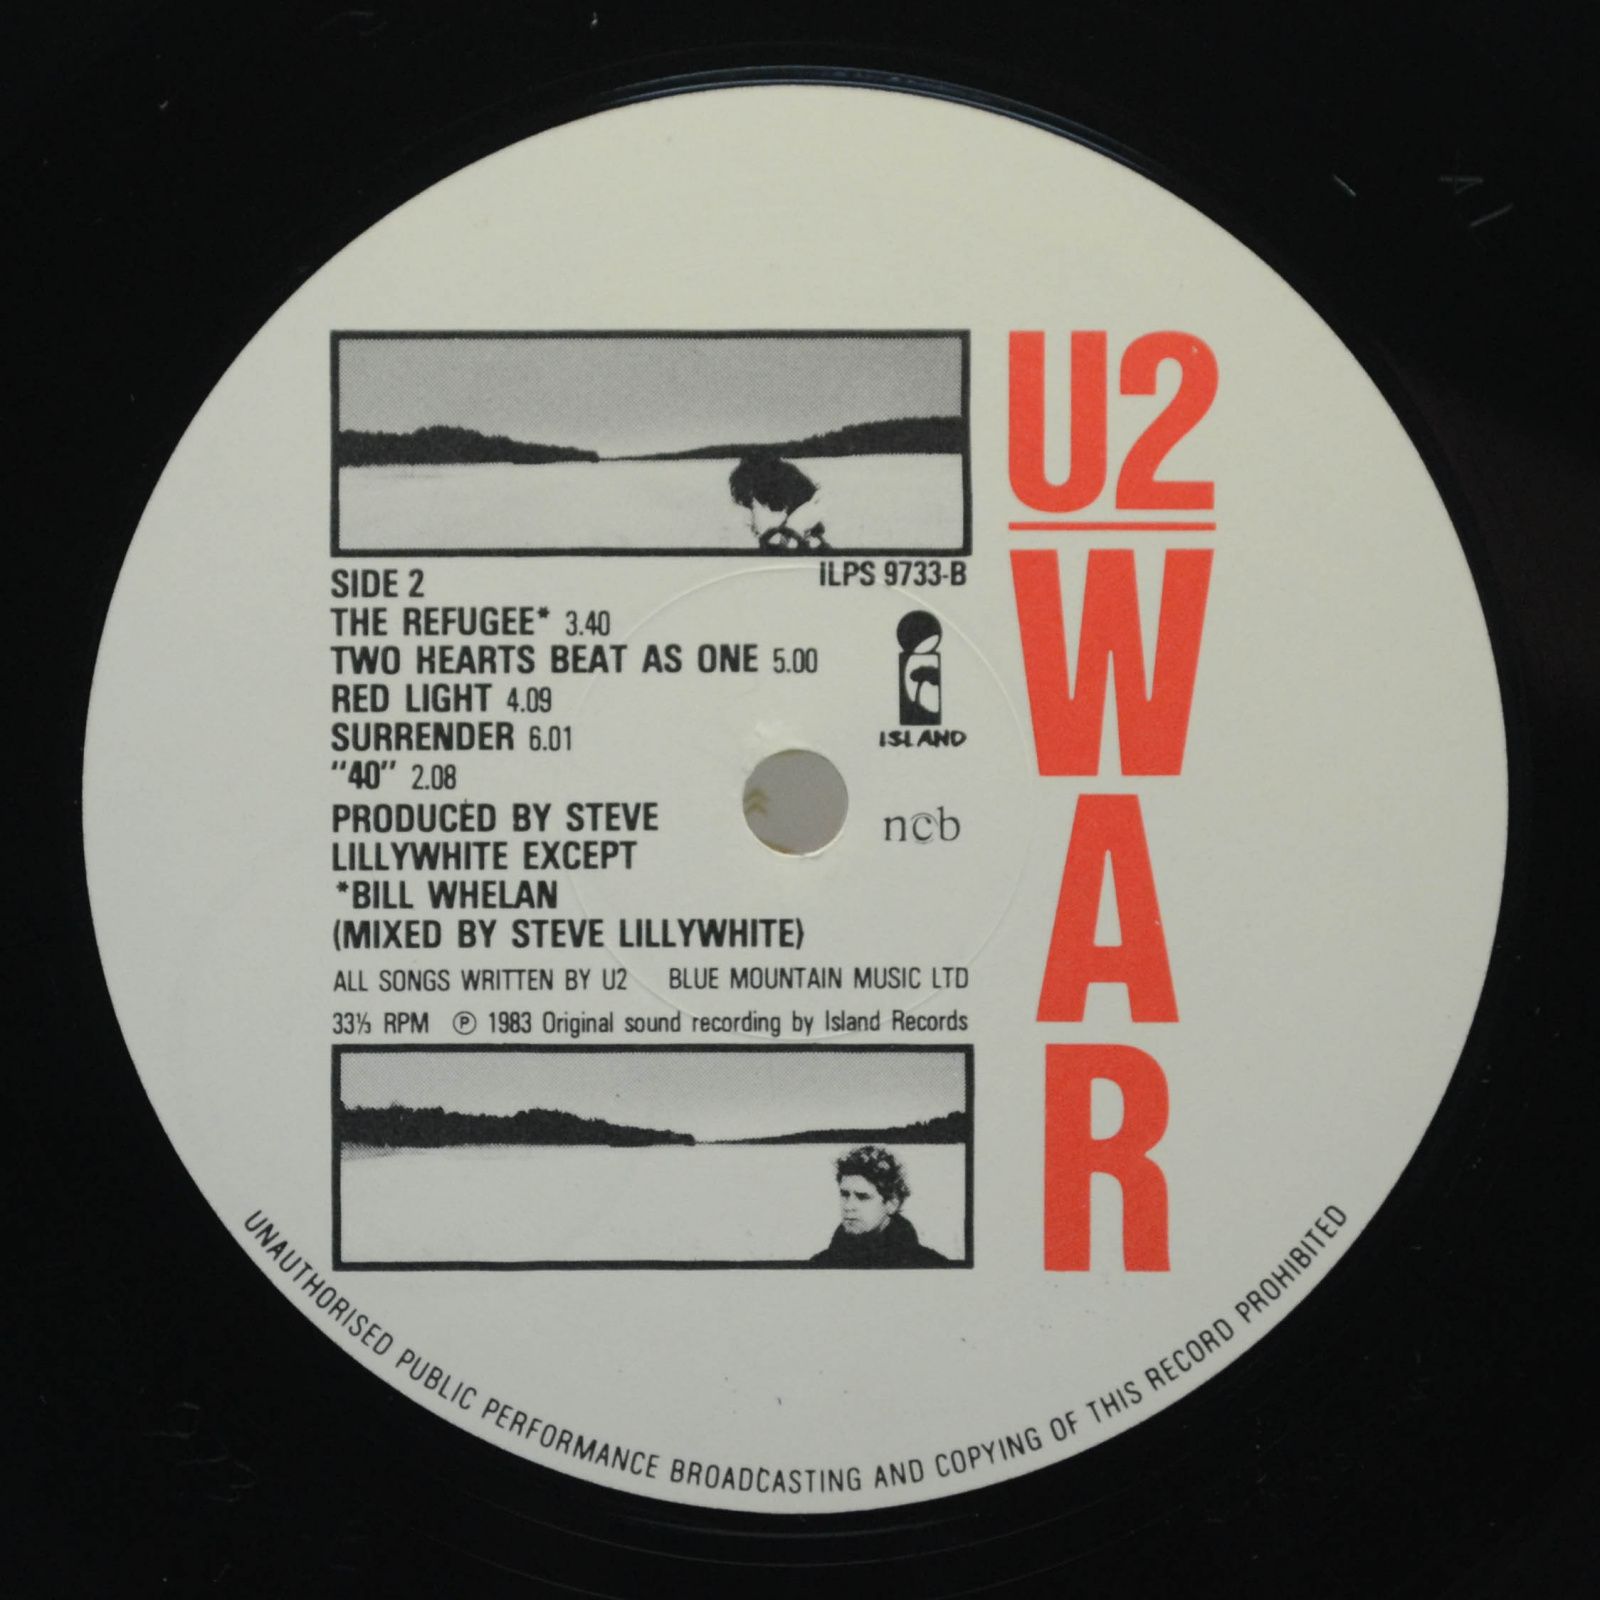 U2 — War, 1983